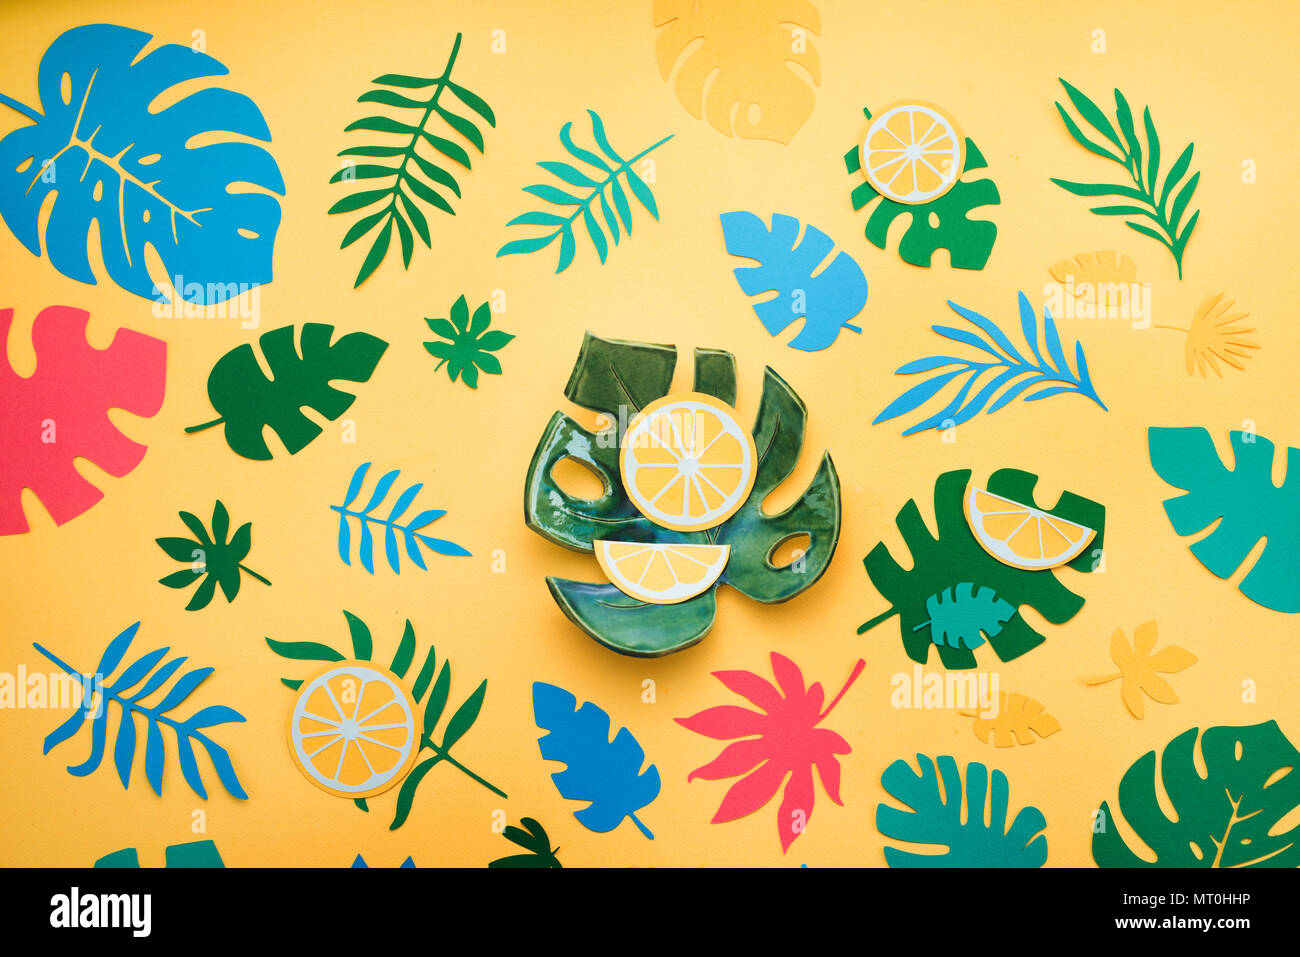 Hoja monstera cerámica en tropical cabezal con naranjas, hojas y frutos patrón sobre un fondo de color amarillo brillante. Colorido laicos plana con recortes de papel. Foto de stock